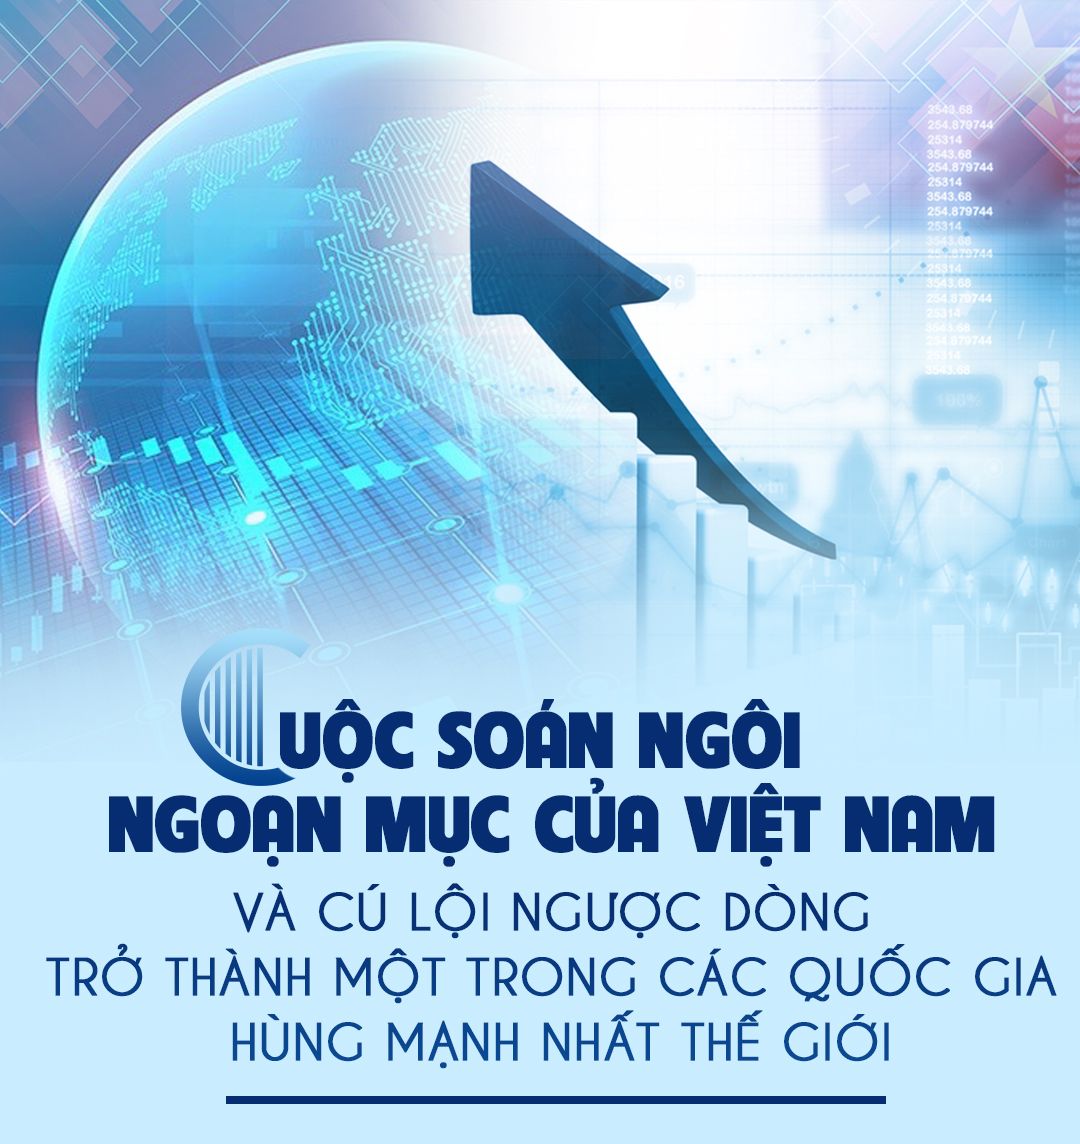 Cuộc soán ngôi ngoạn mục của Việt Nam, và cú lội ngược dòng trở thành một trong các quốc gia hùng mạnh nhất thế giới